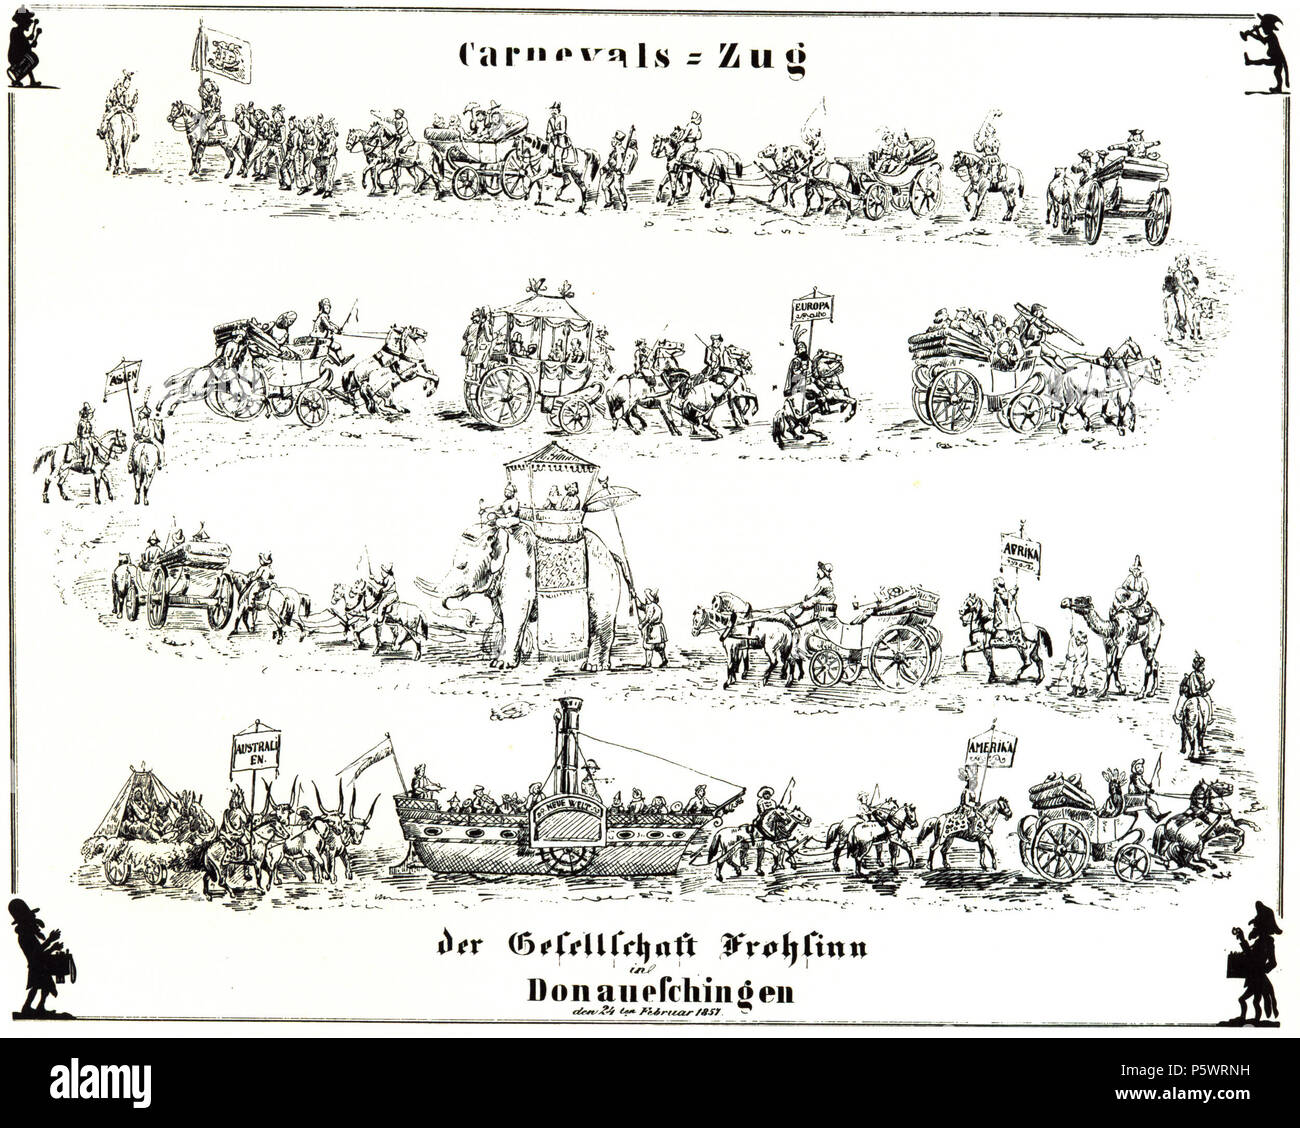 N/A. Donaueschingen, Carnvals-Zug der Gesellschaft Frohsinn, 1857 . 1857. Anonymous 465 Donaueschingen Carnevals-Zug 1857 Stock Photo